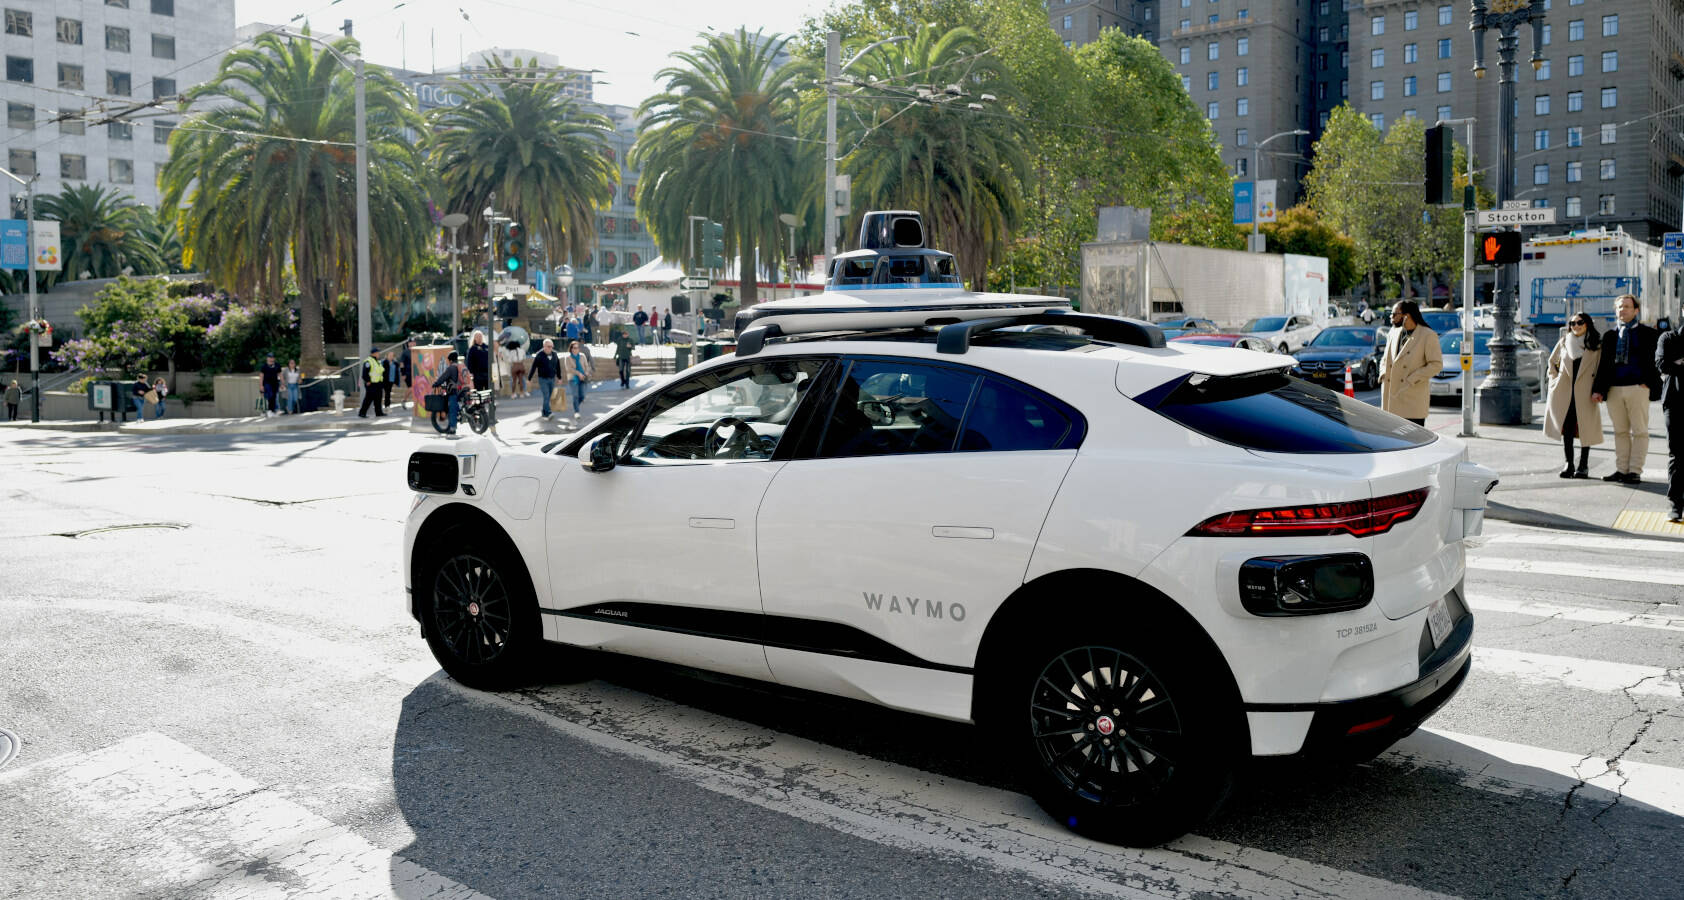 Mengapa taksi tanpa pengemudi Waymo melaju di sisi jalan SF yang salah